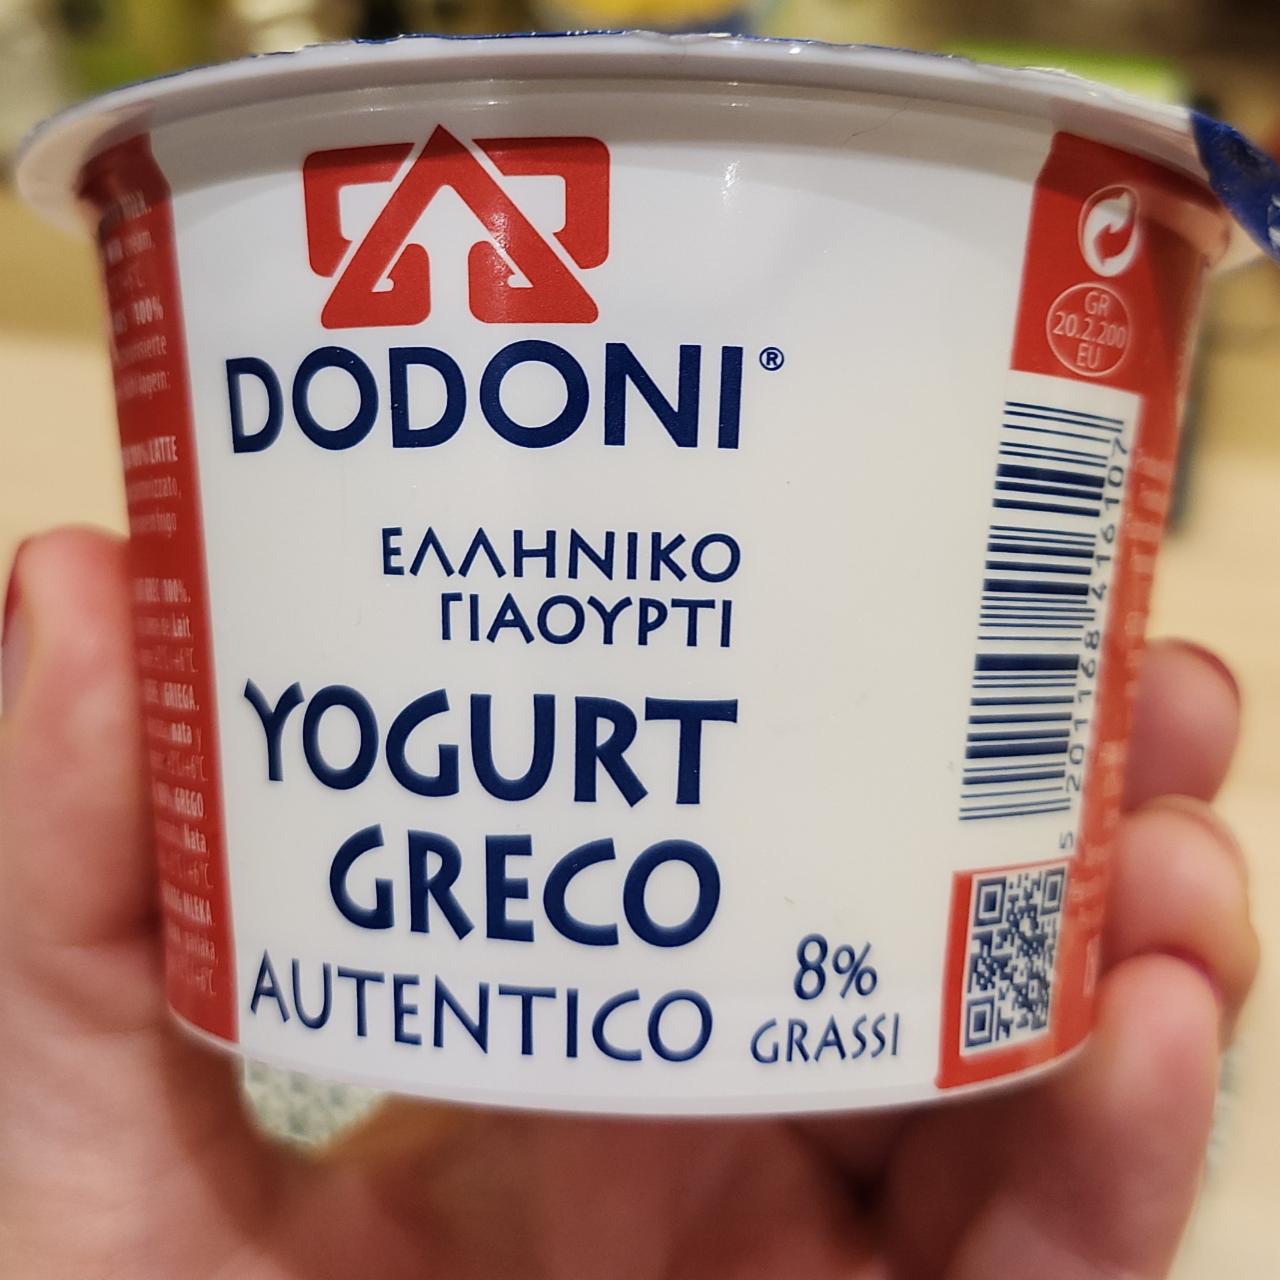 Fotografie - Yogurt Greco Autentico 8% grassi Dodoni